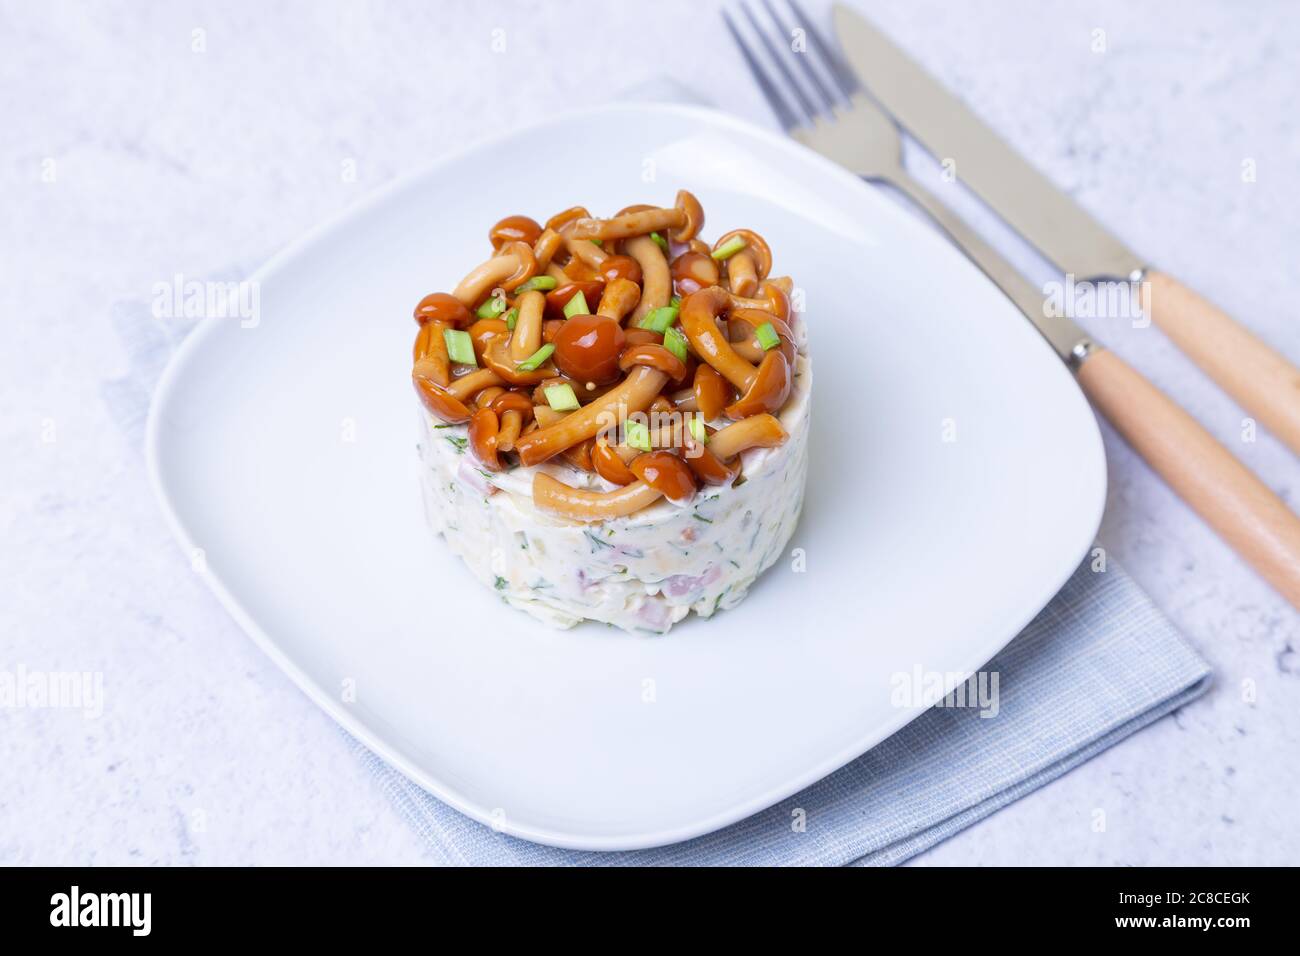 Salade avec champignons (champignon du miel), jambon, pommes de terre, fromage et mayonnaise. Salade russe traditionnelle «panier de champignons». Mise au point sélective, gros plan Banque D'Images